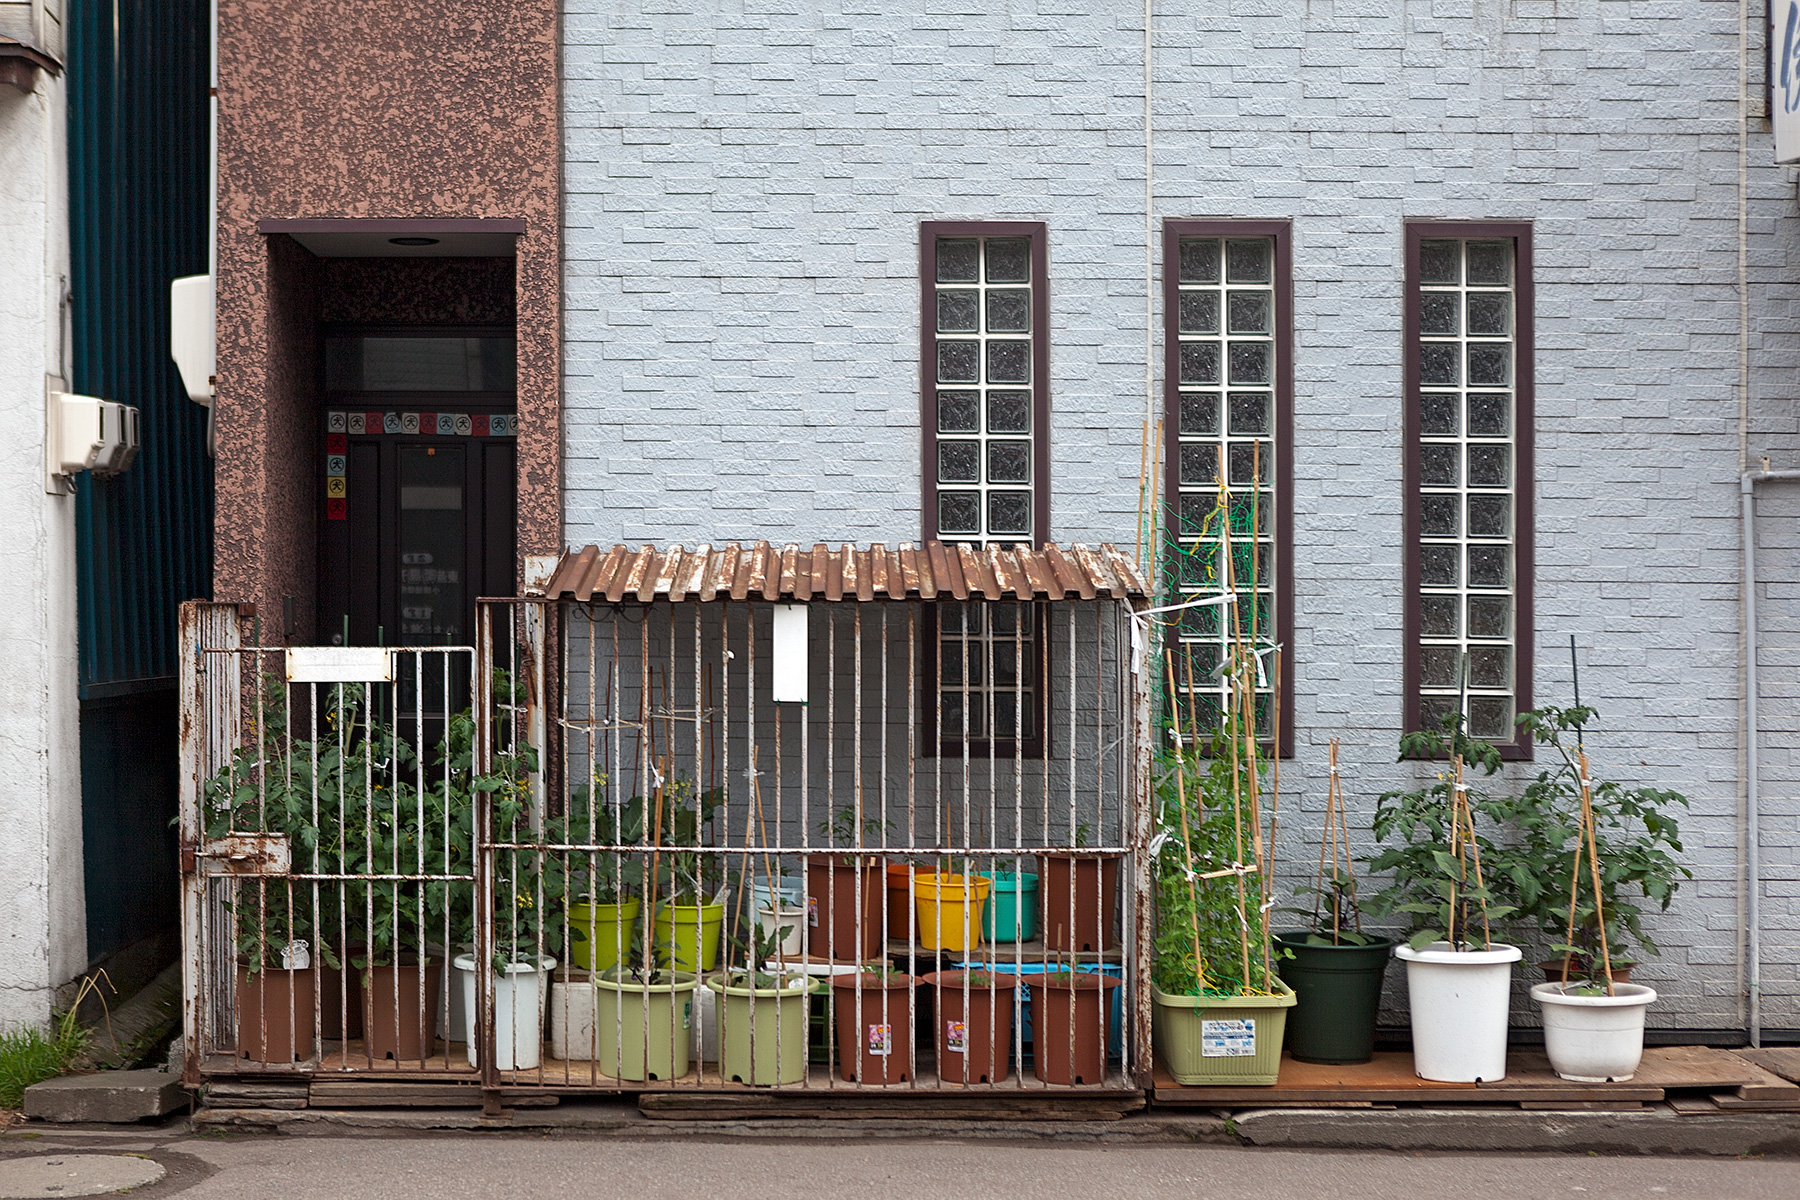 Hausfassade mit Kübelpflanzen davor